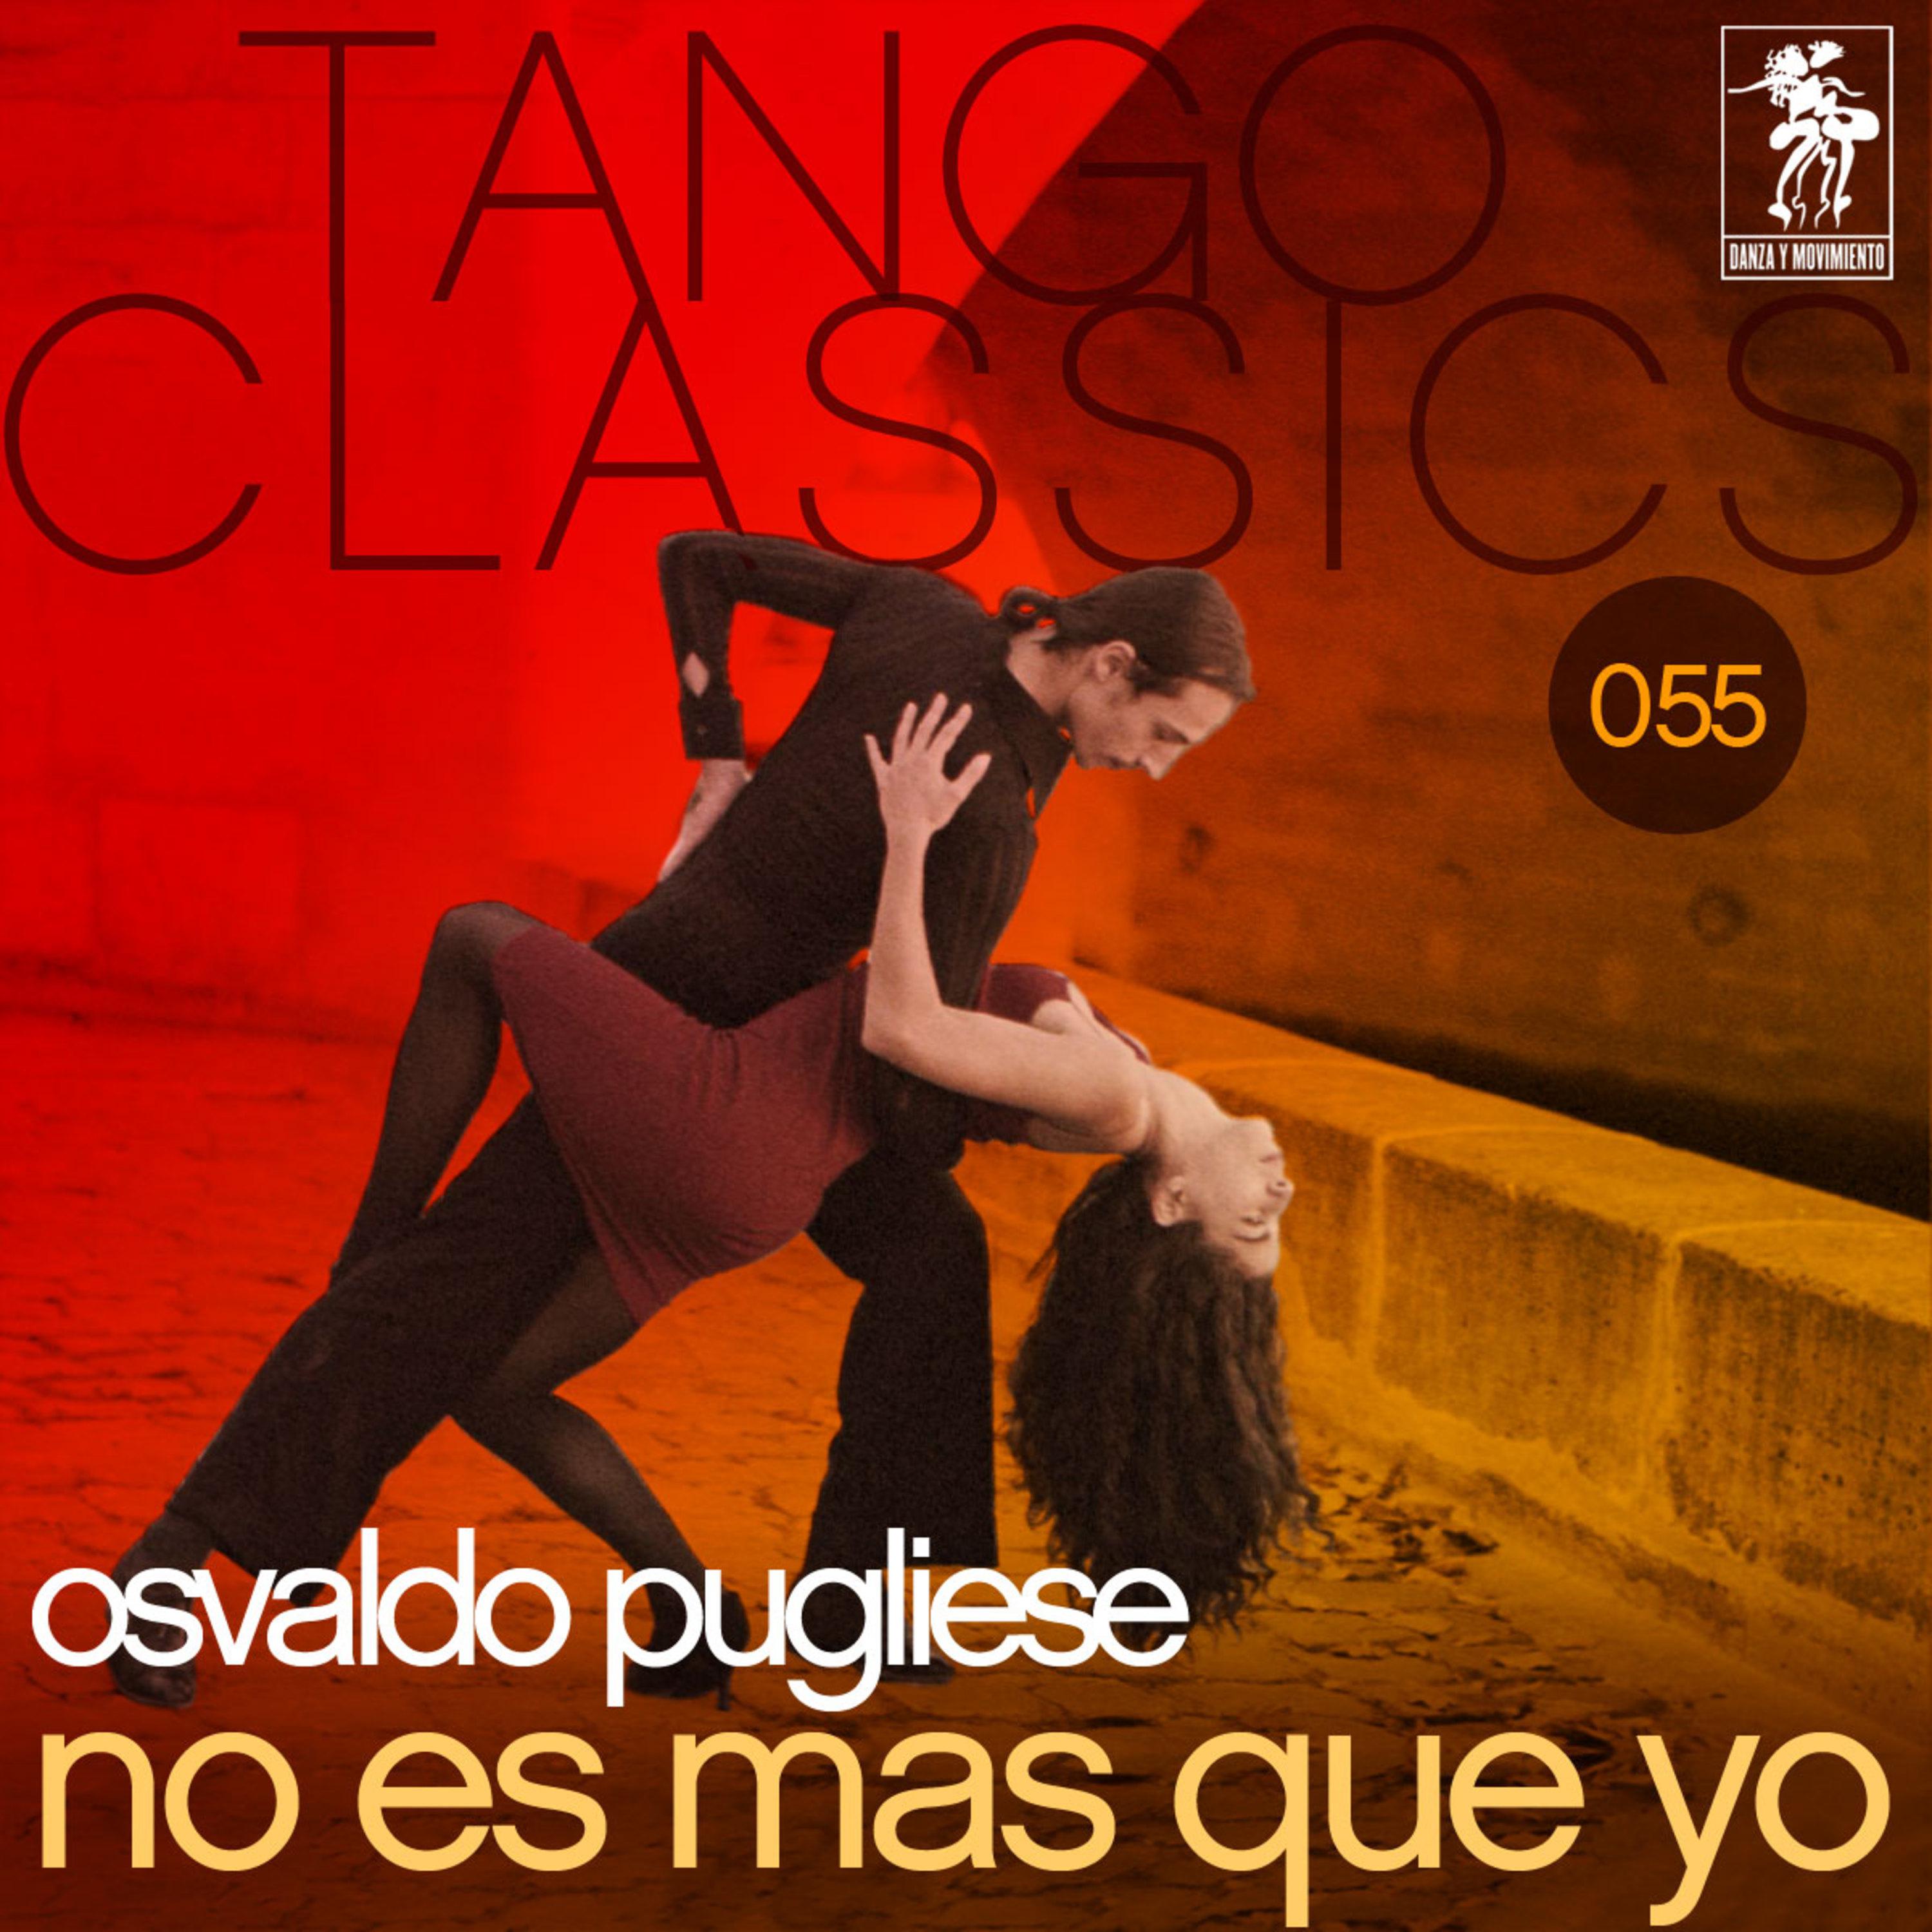 Tango Classics 055: No es mas que yo